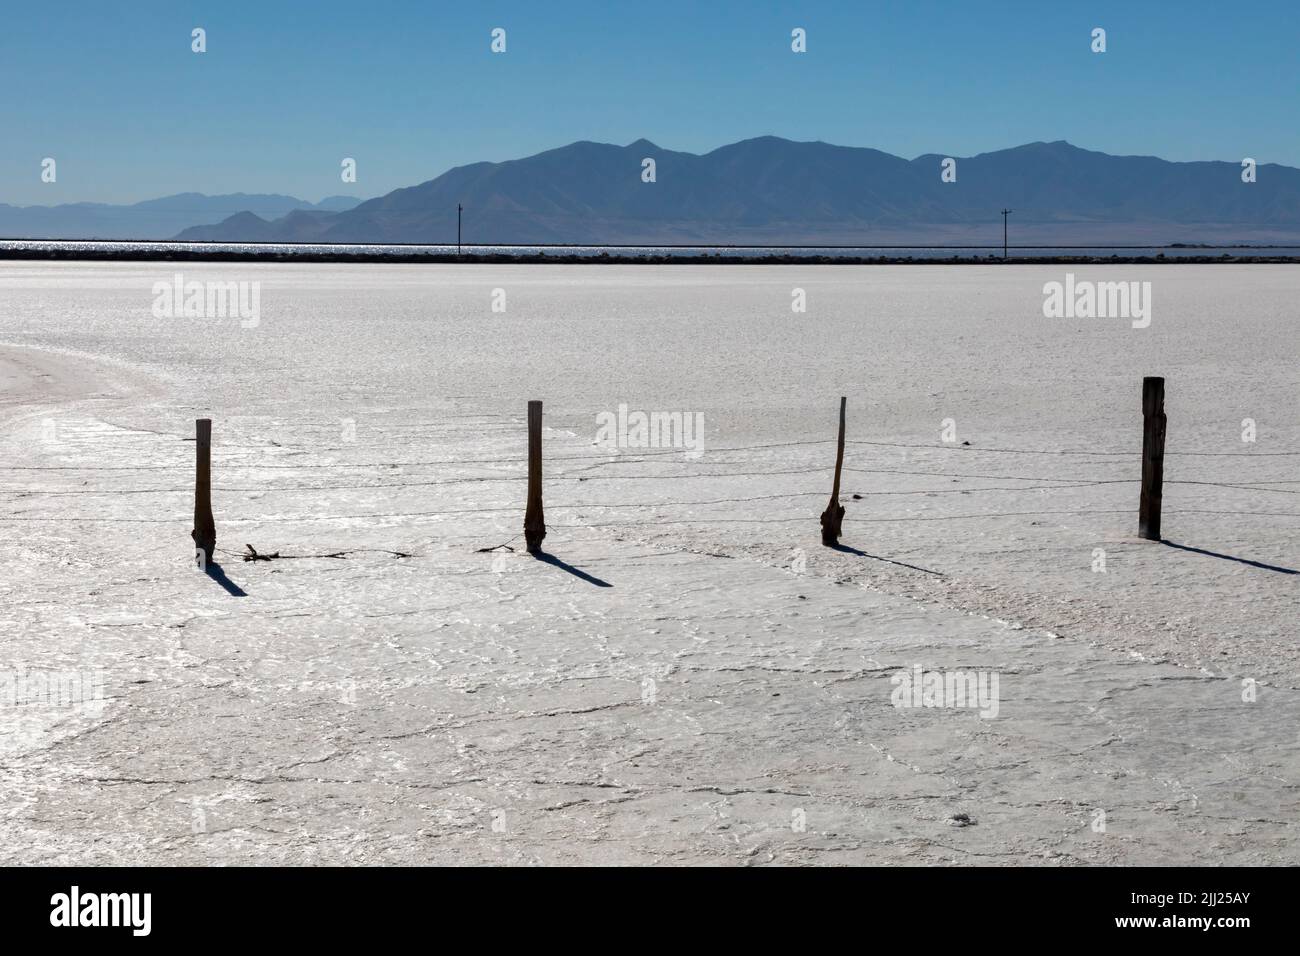 Grantsville, Utah - die Morton Salt-Anlage, in der Salz durch Aufschlagen von Sole in flachen Verdampfungsteichen am Rande des Great Salt Lake produziert wird. Stockfoto